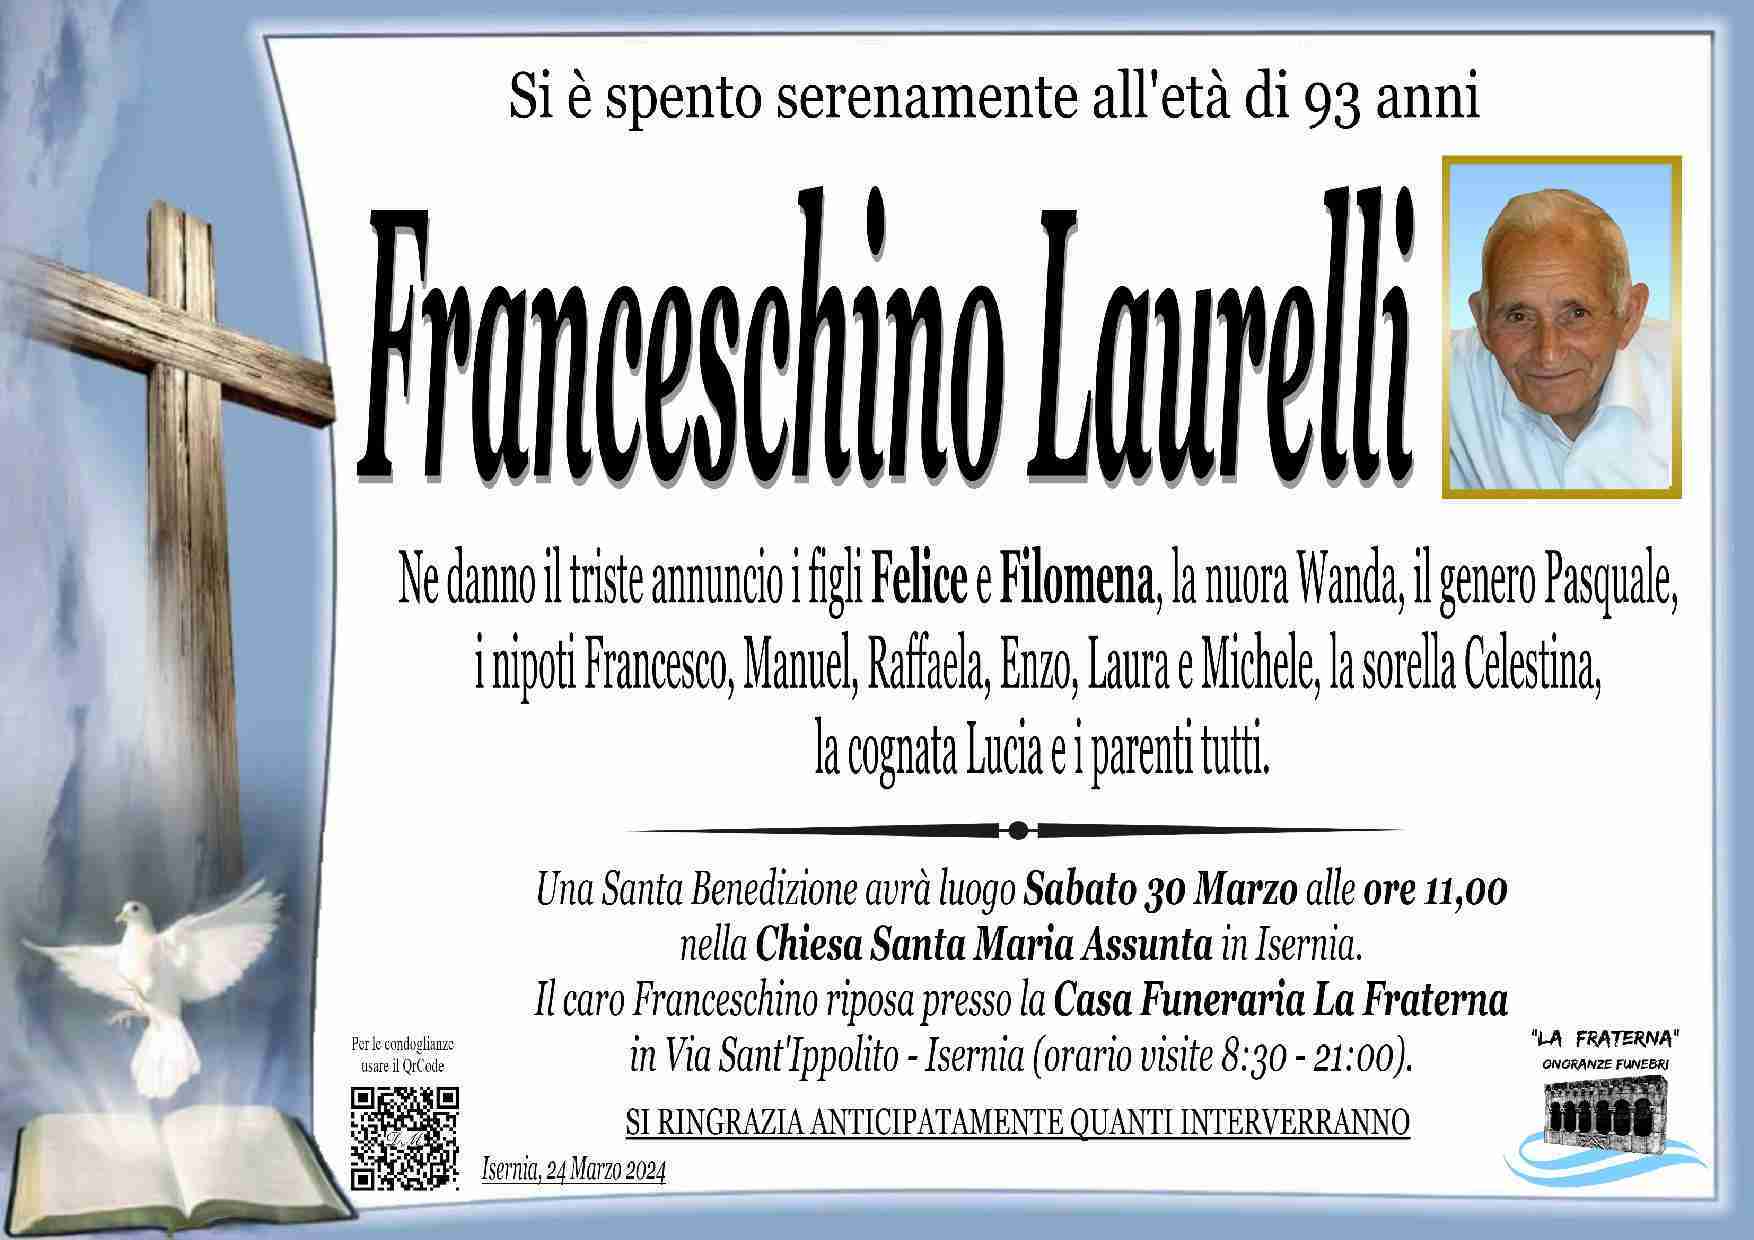 Franceschino Laurelli